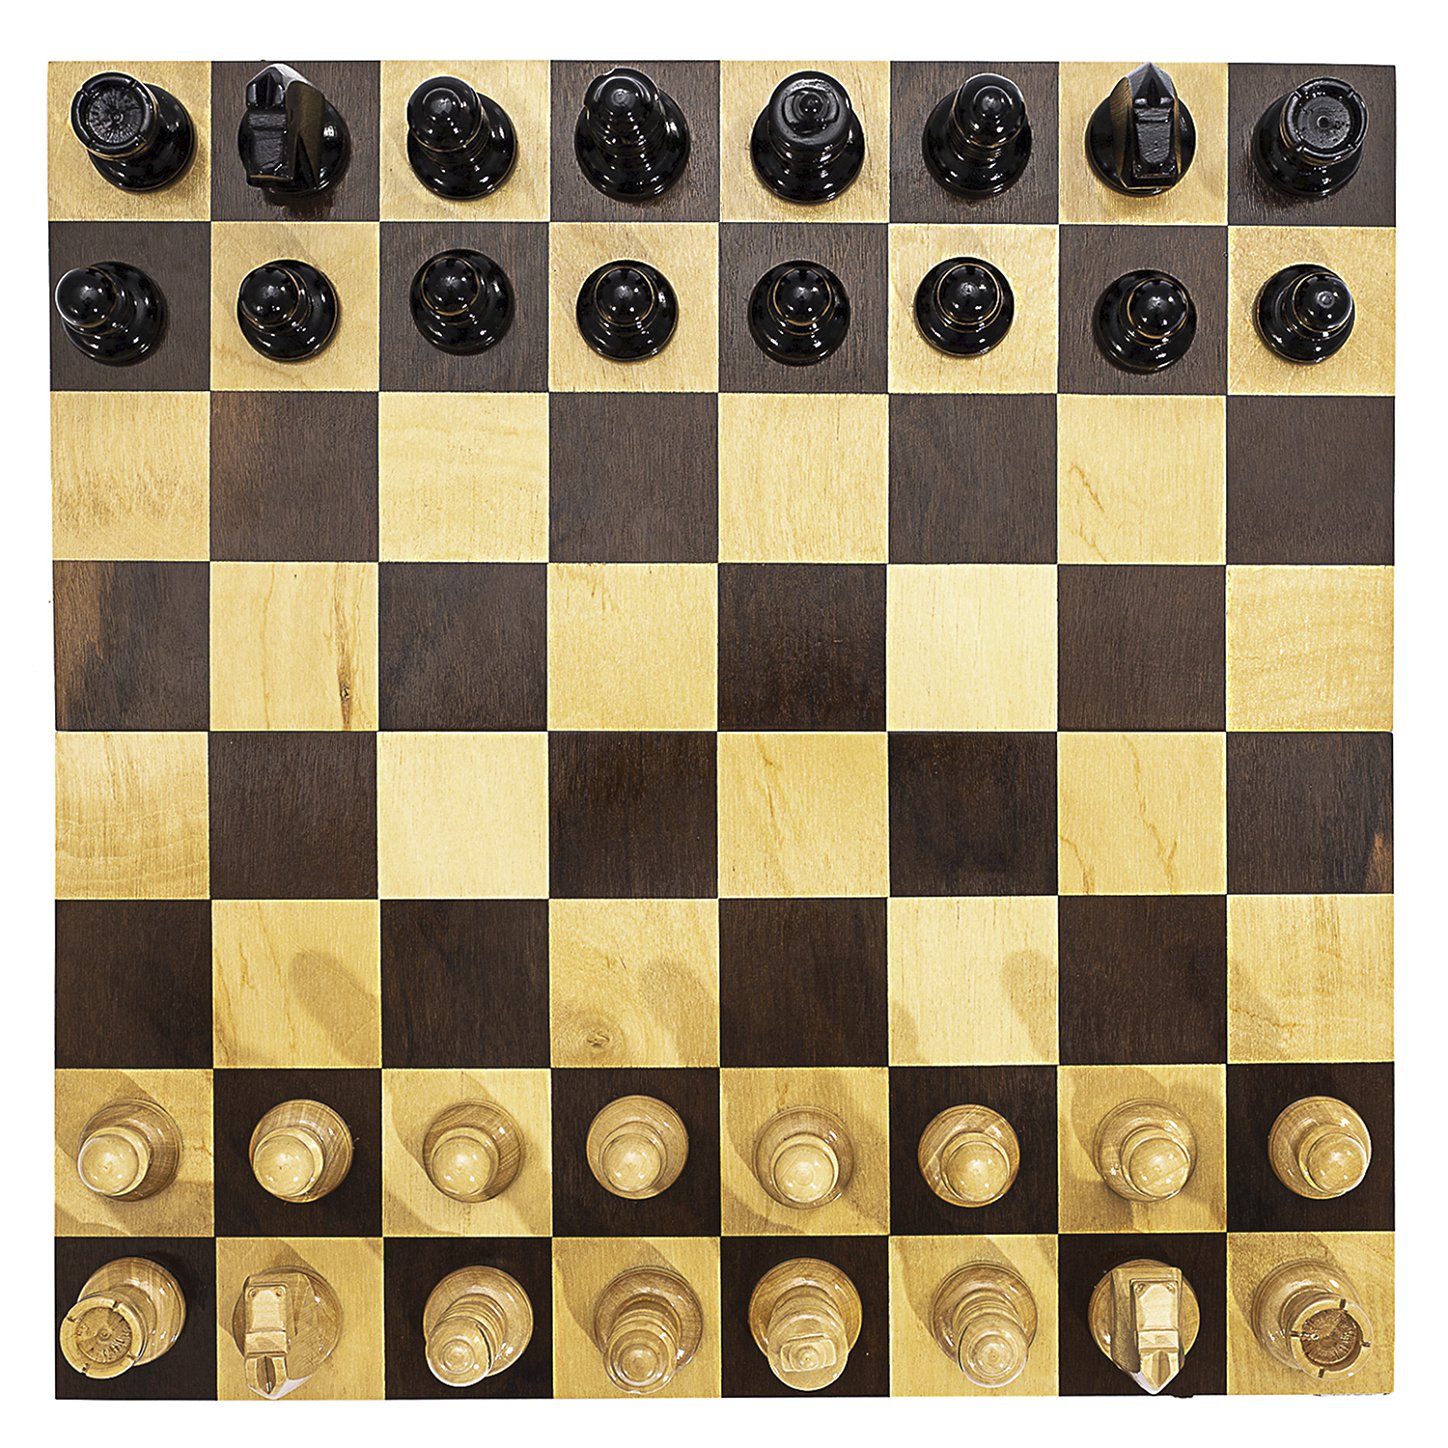 tabuleiro de xadrez de dois lados de madeira, aparência requintada